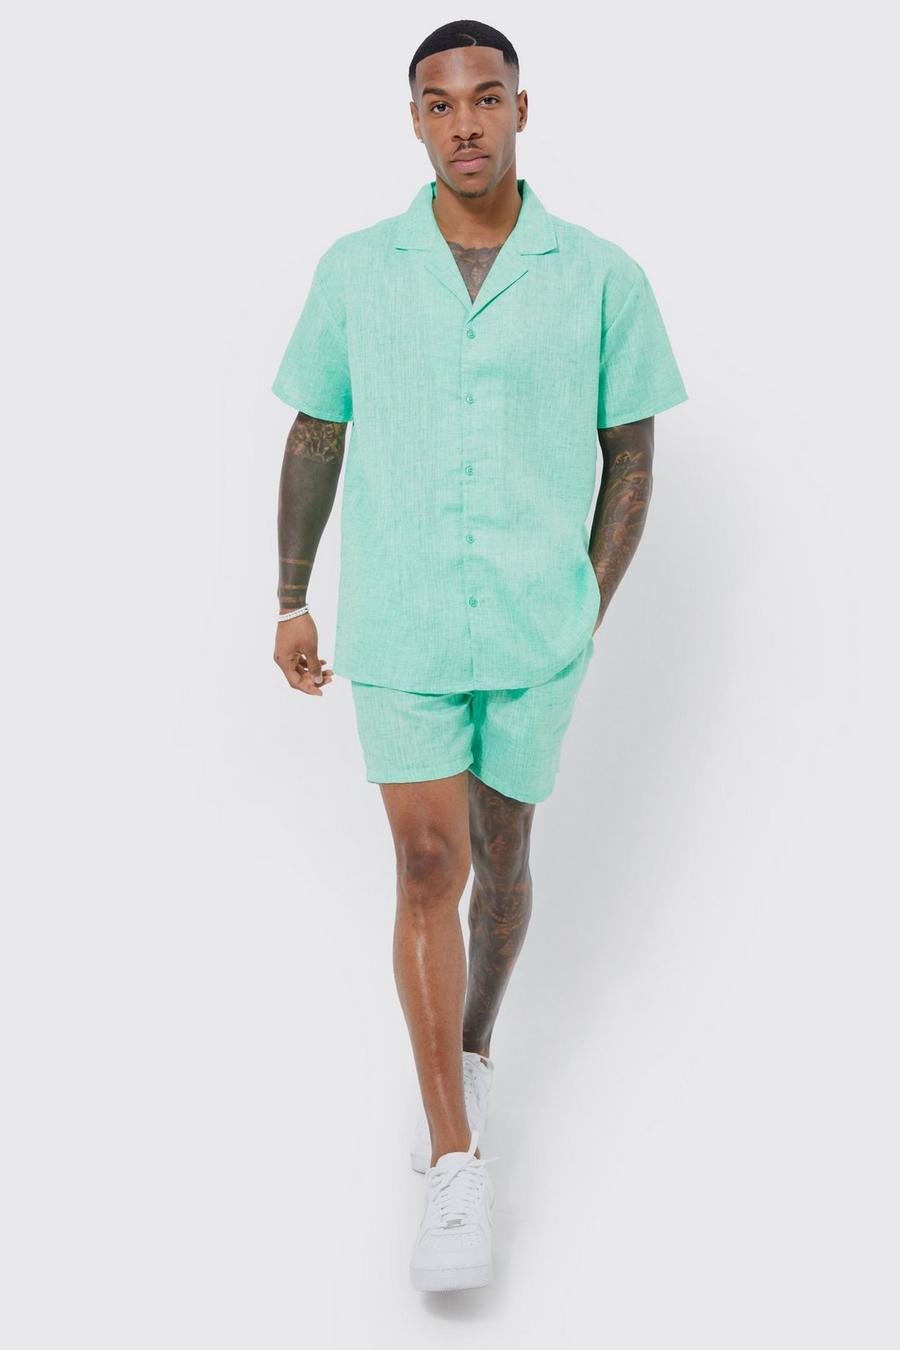 Green Short Sleeve Oversized Linen Look Shirt And Short